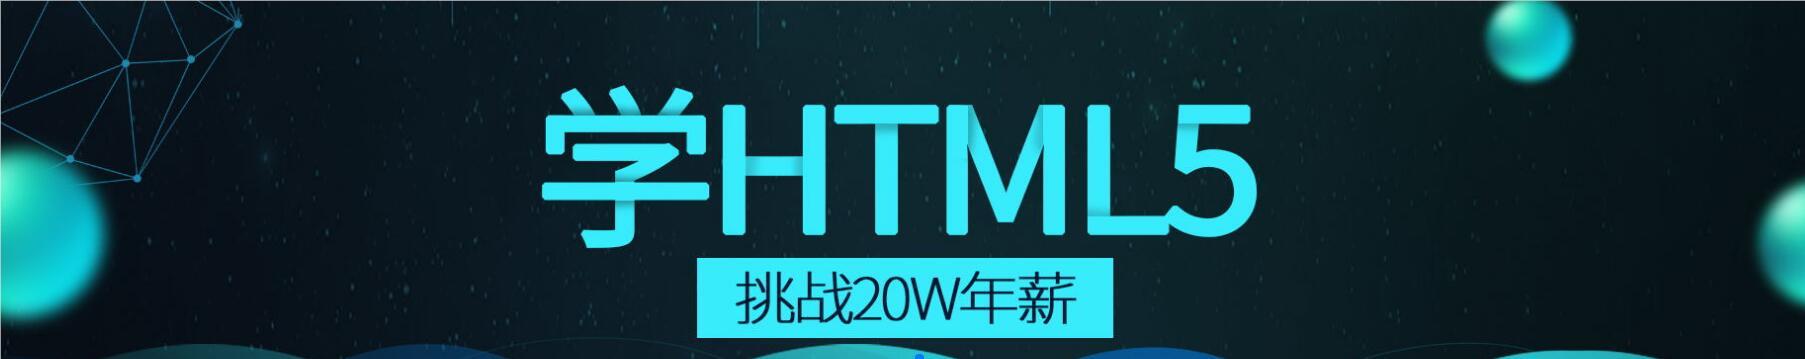 郑州云和教育HTML5培训学校